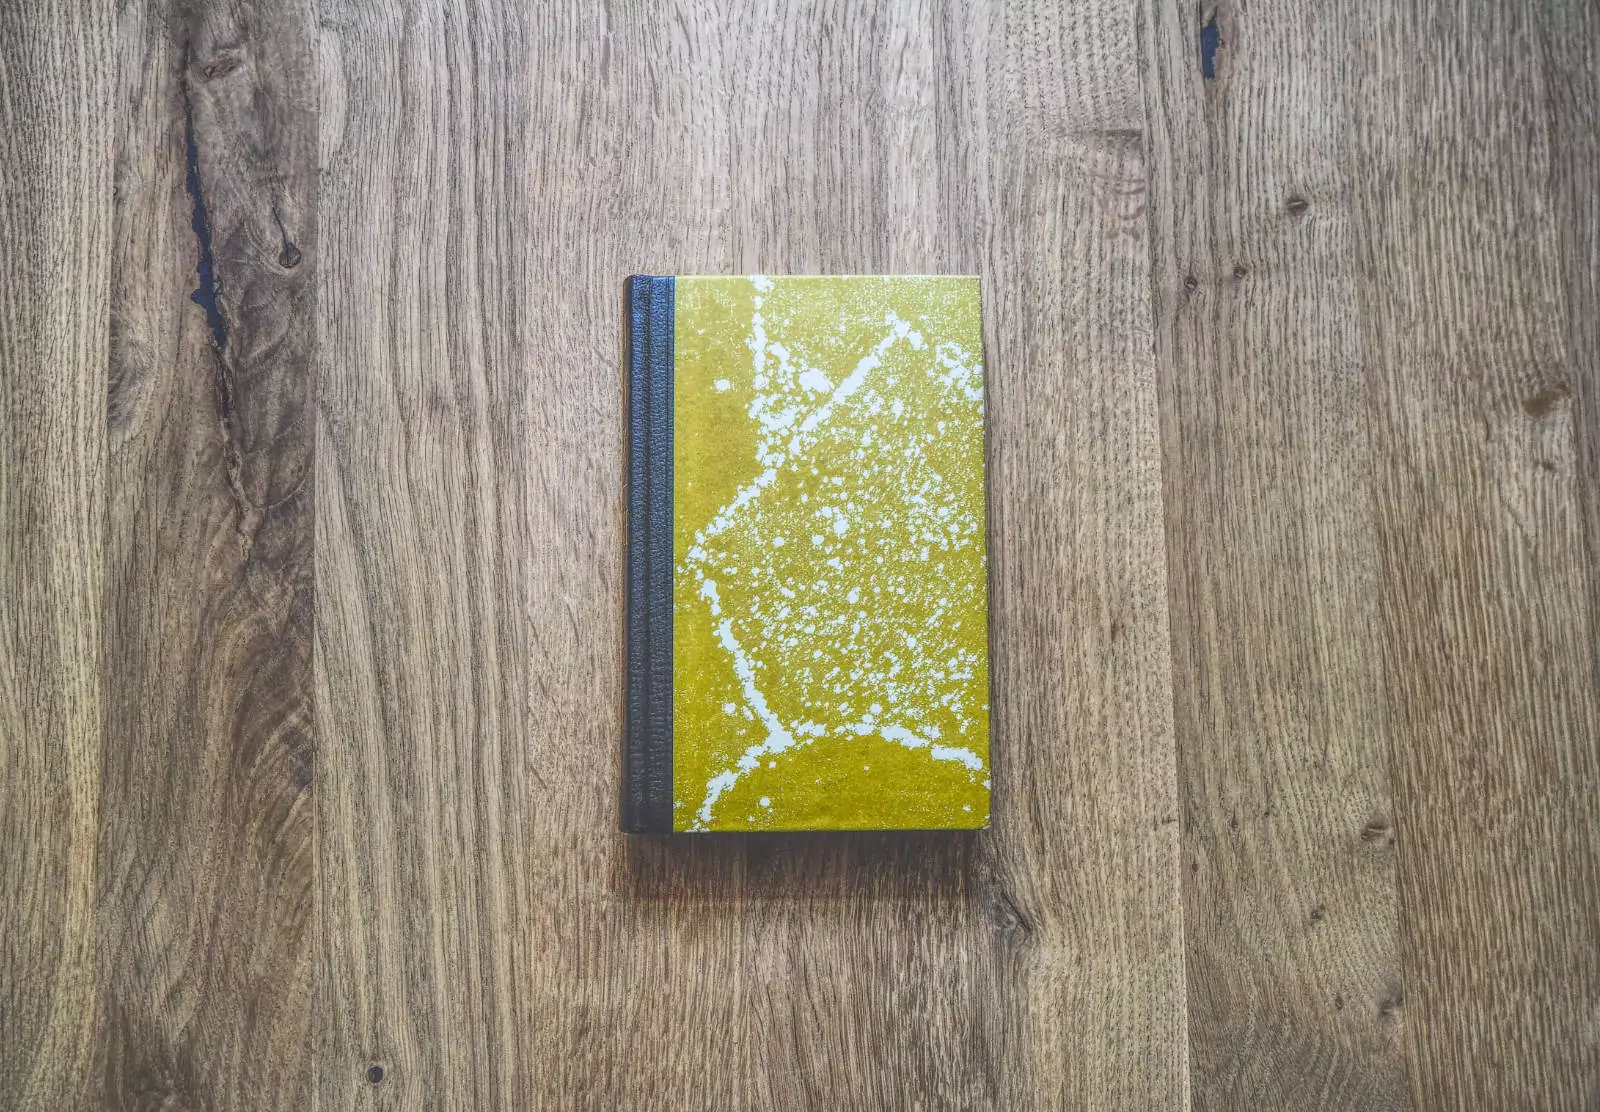 Ein kleines gelbes Buch mit schwarzem Buchrücken liegt geschlossen auf einer Holzoberfläche. Der Buchdeckel weist ein marmoriertes Muster auf.